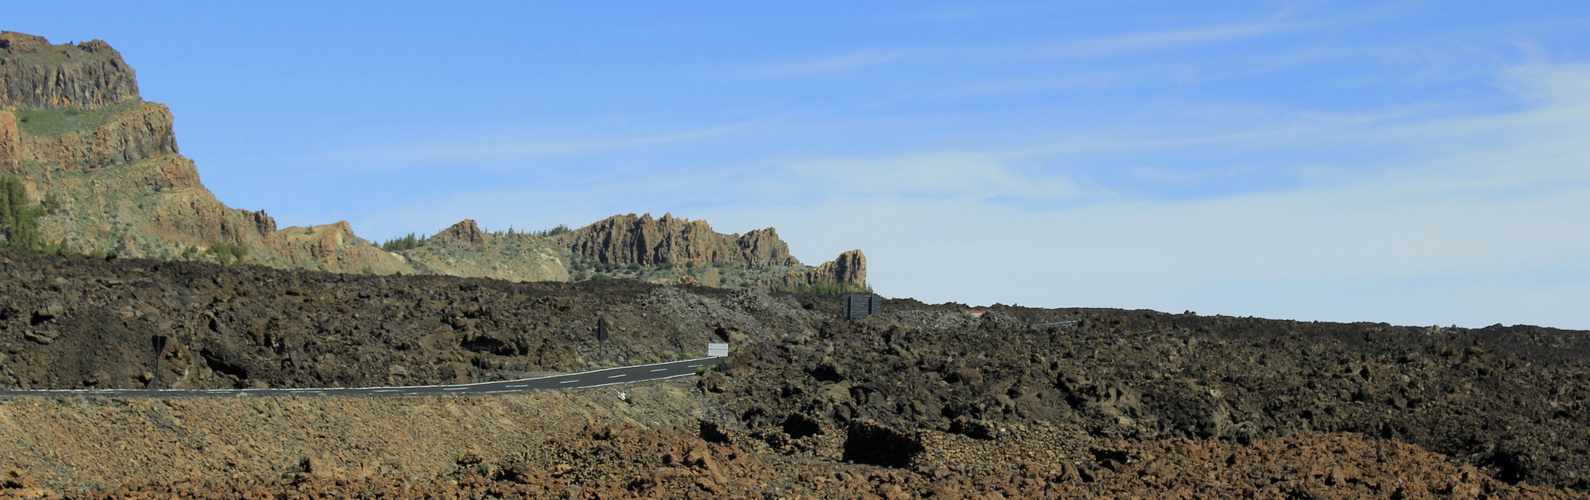 Teneriffa 2011 - auf dem Weg zum Pico del Teide